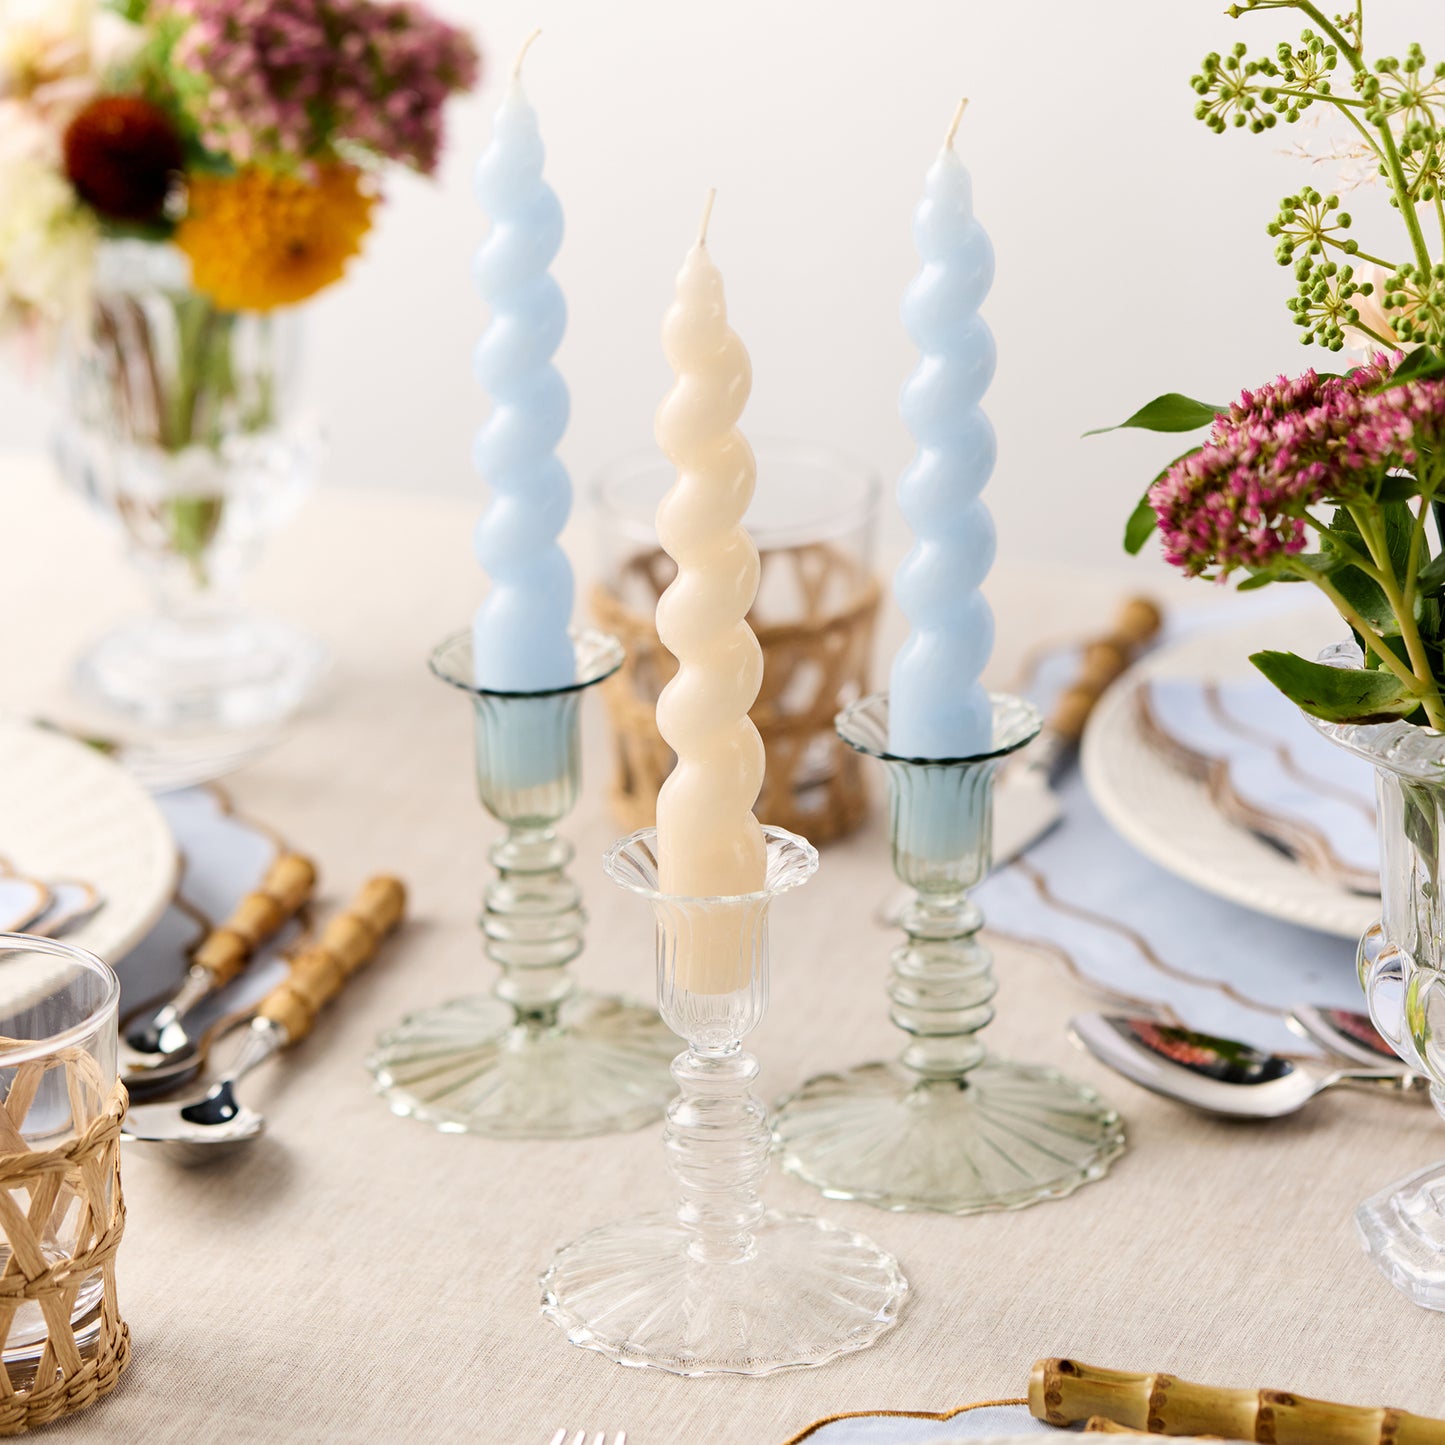 Set of 4 - Spiral Gloss Candles - Rich Cream